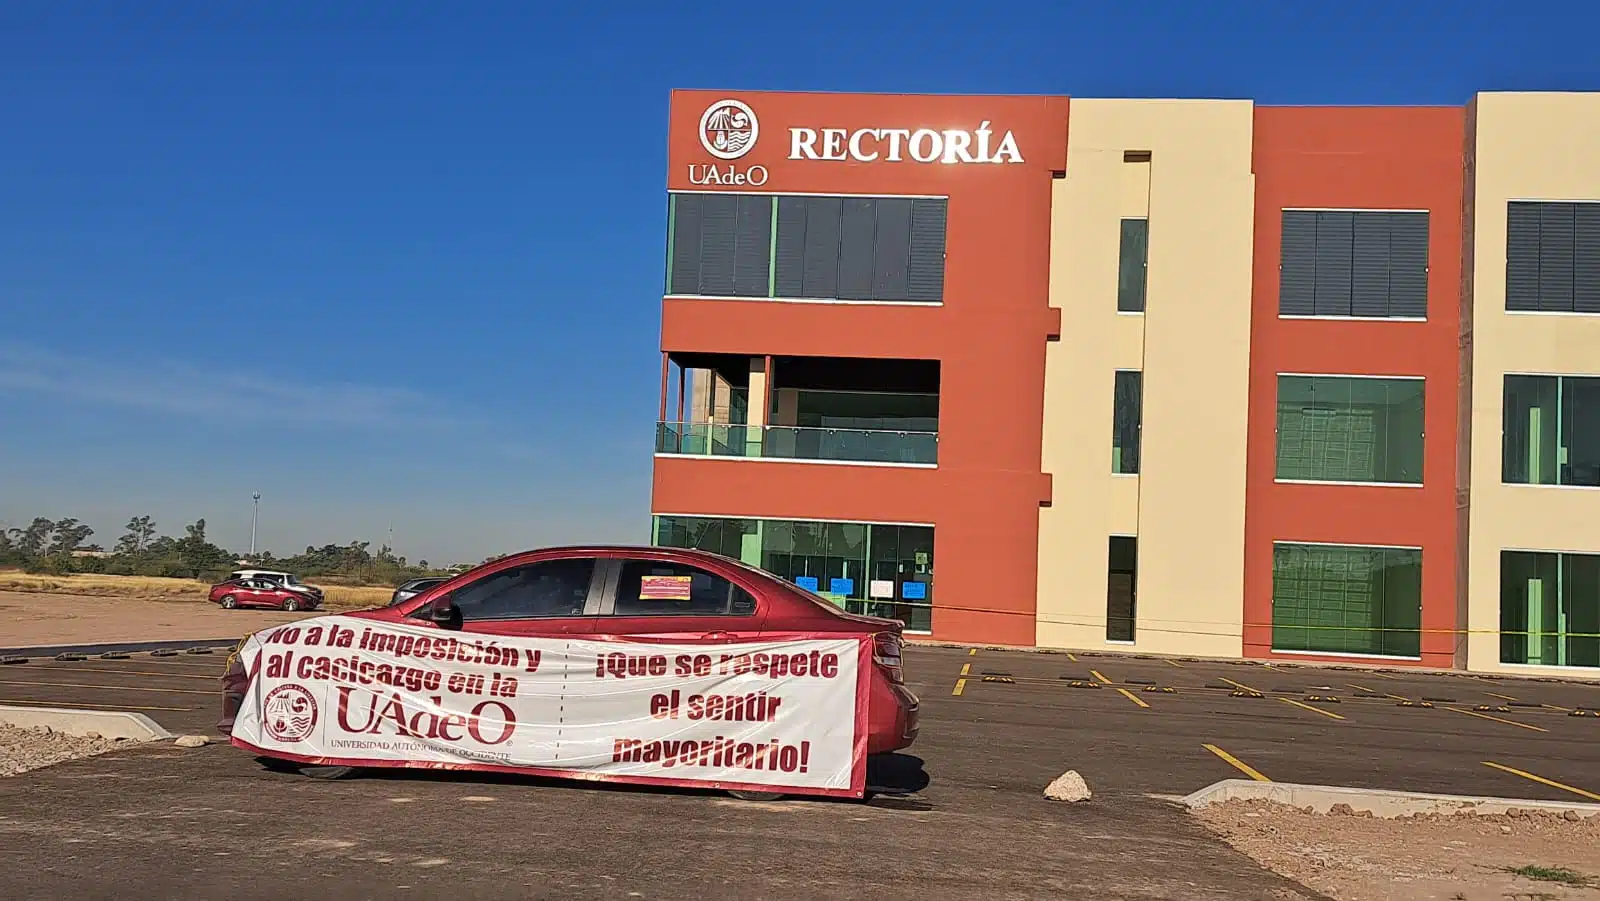 Edificio de Rectoría de la UAdeO y un automóvil con un banner que contiene un mensaje de protesta